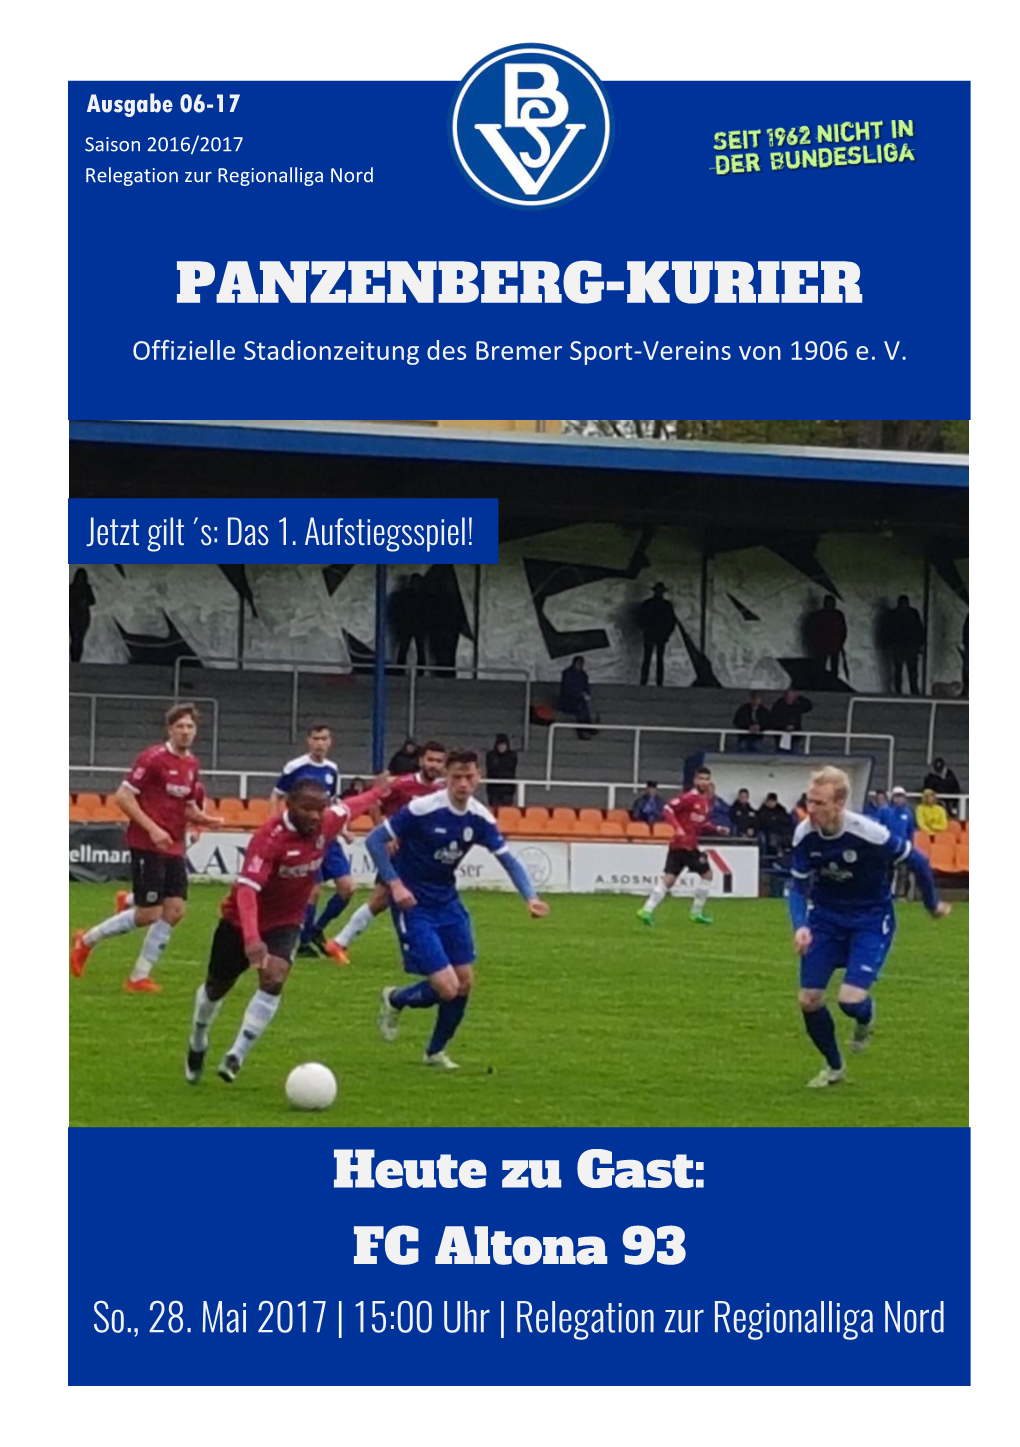 PANZENBERG-KURIER Offizielle Stadionzeitung Des Bremer Sport-Vereins Von 1906 E